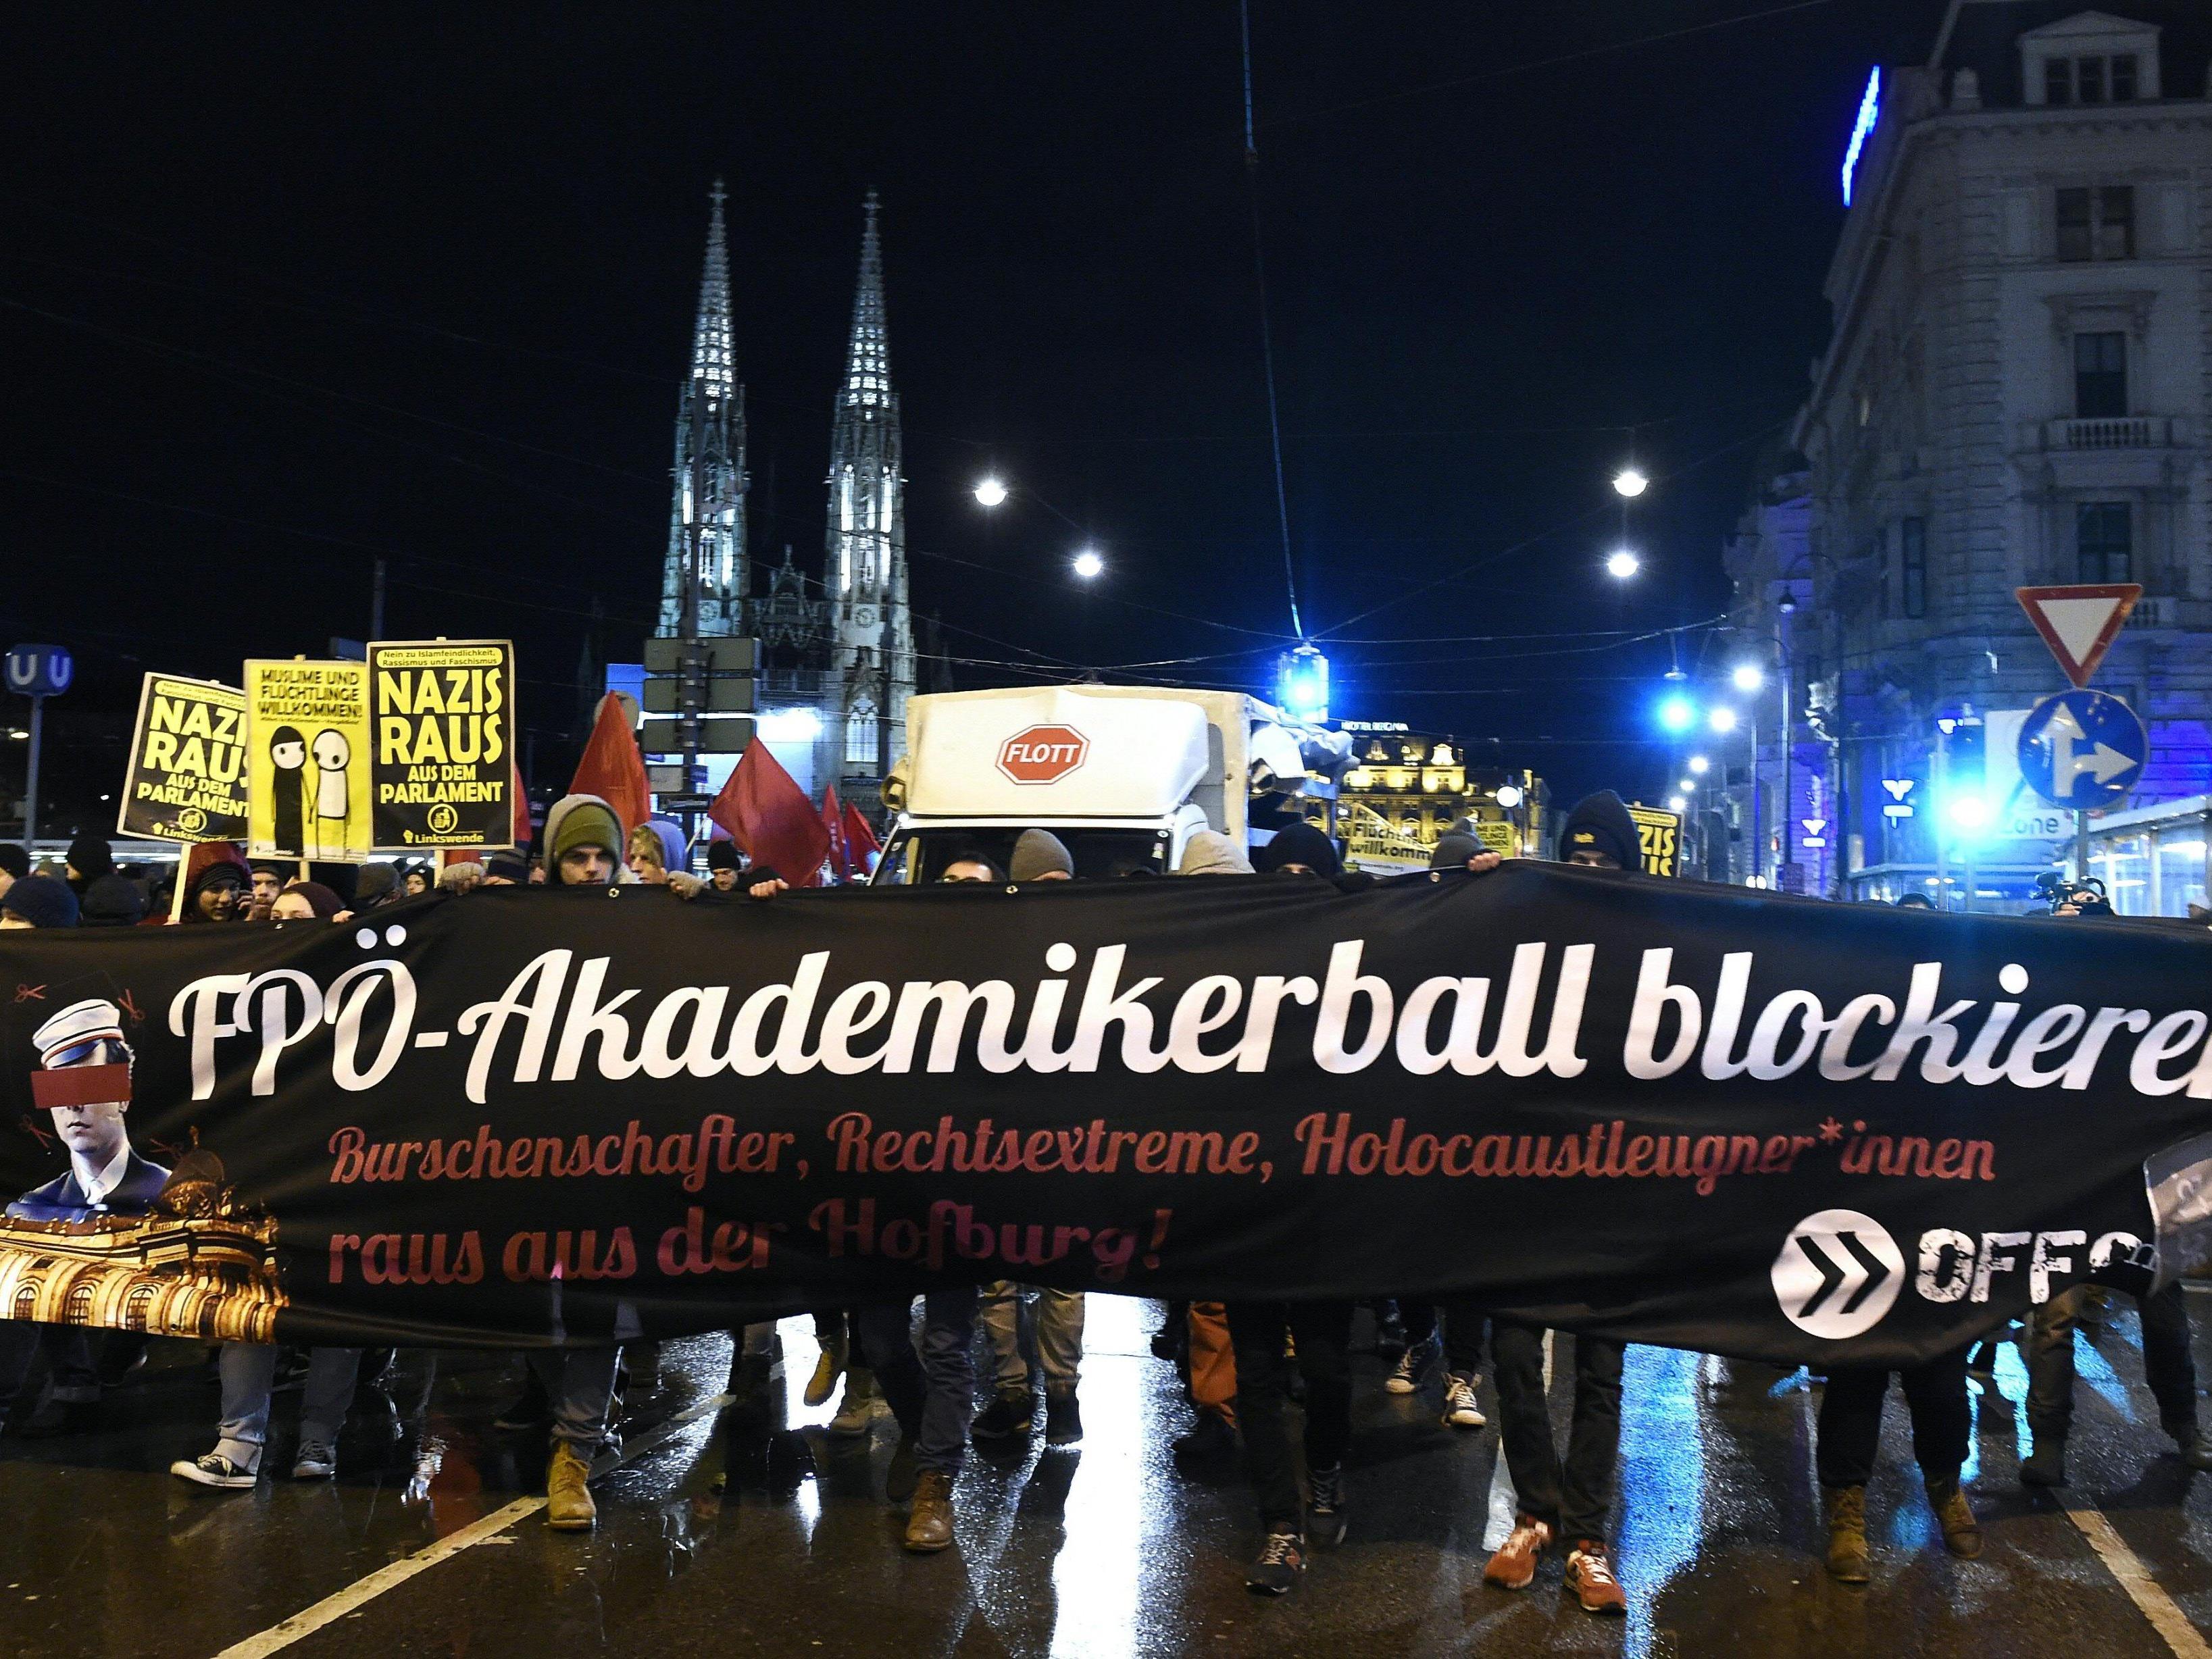 Die OGR-Demonstration gegen den Akademikerball 2016 soll größer und länger ausfallen.